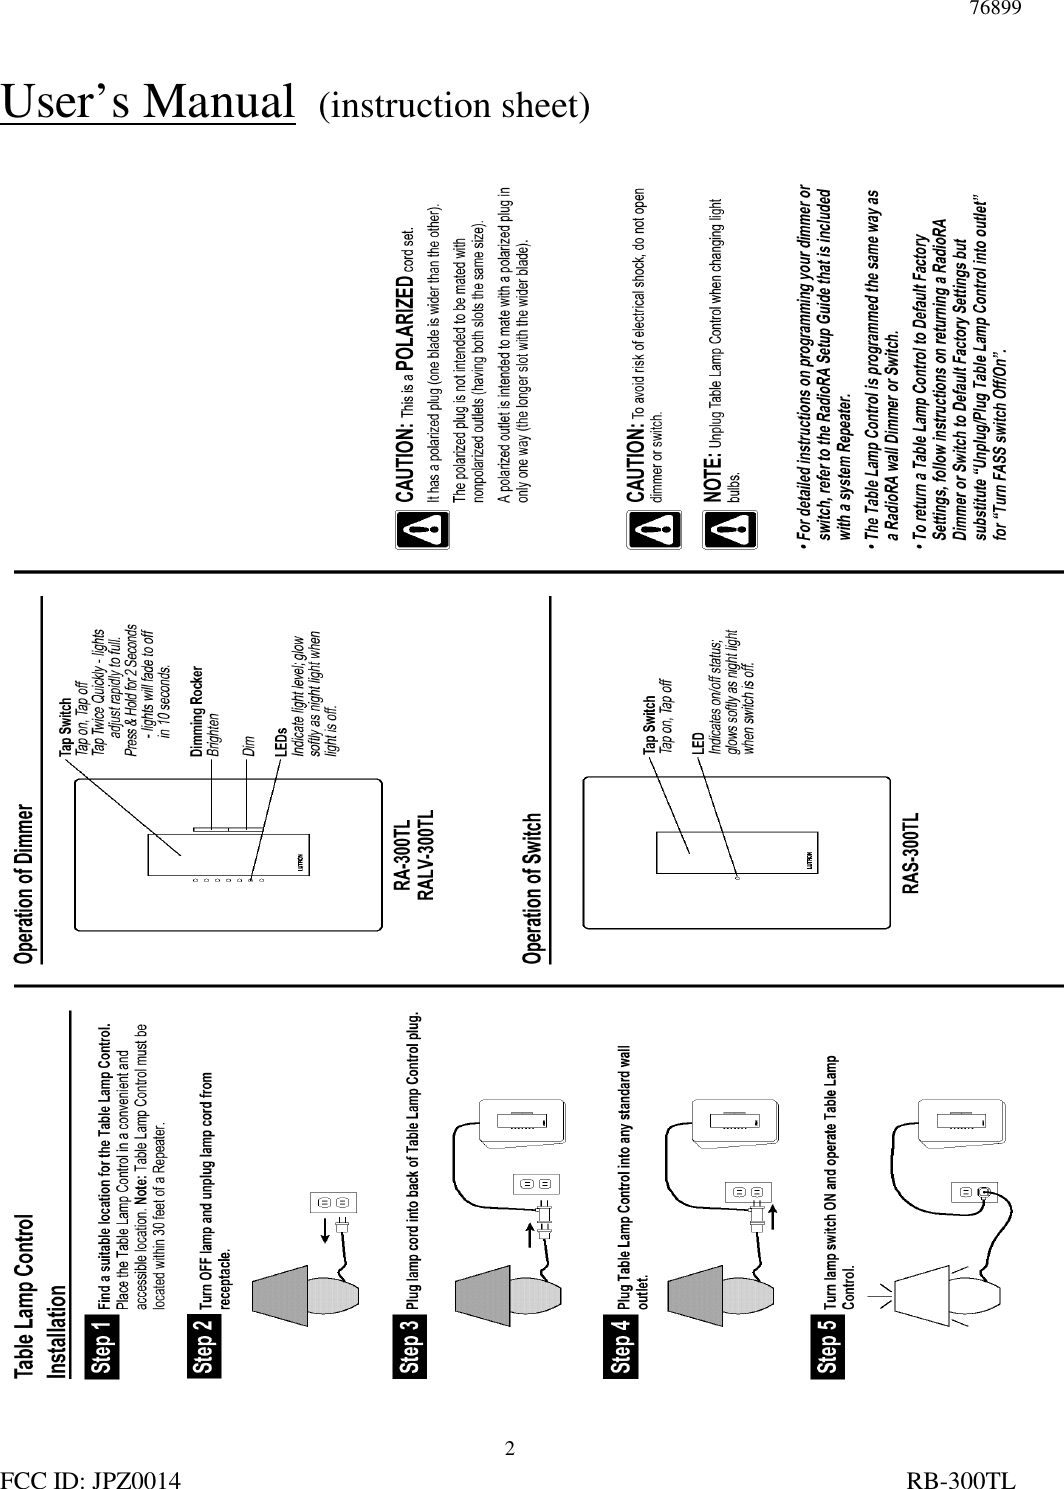 76899FCC ID: JPZ0014                                                                                                                    RB-300TL2User’s Manual  (instruction sheet)